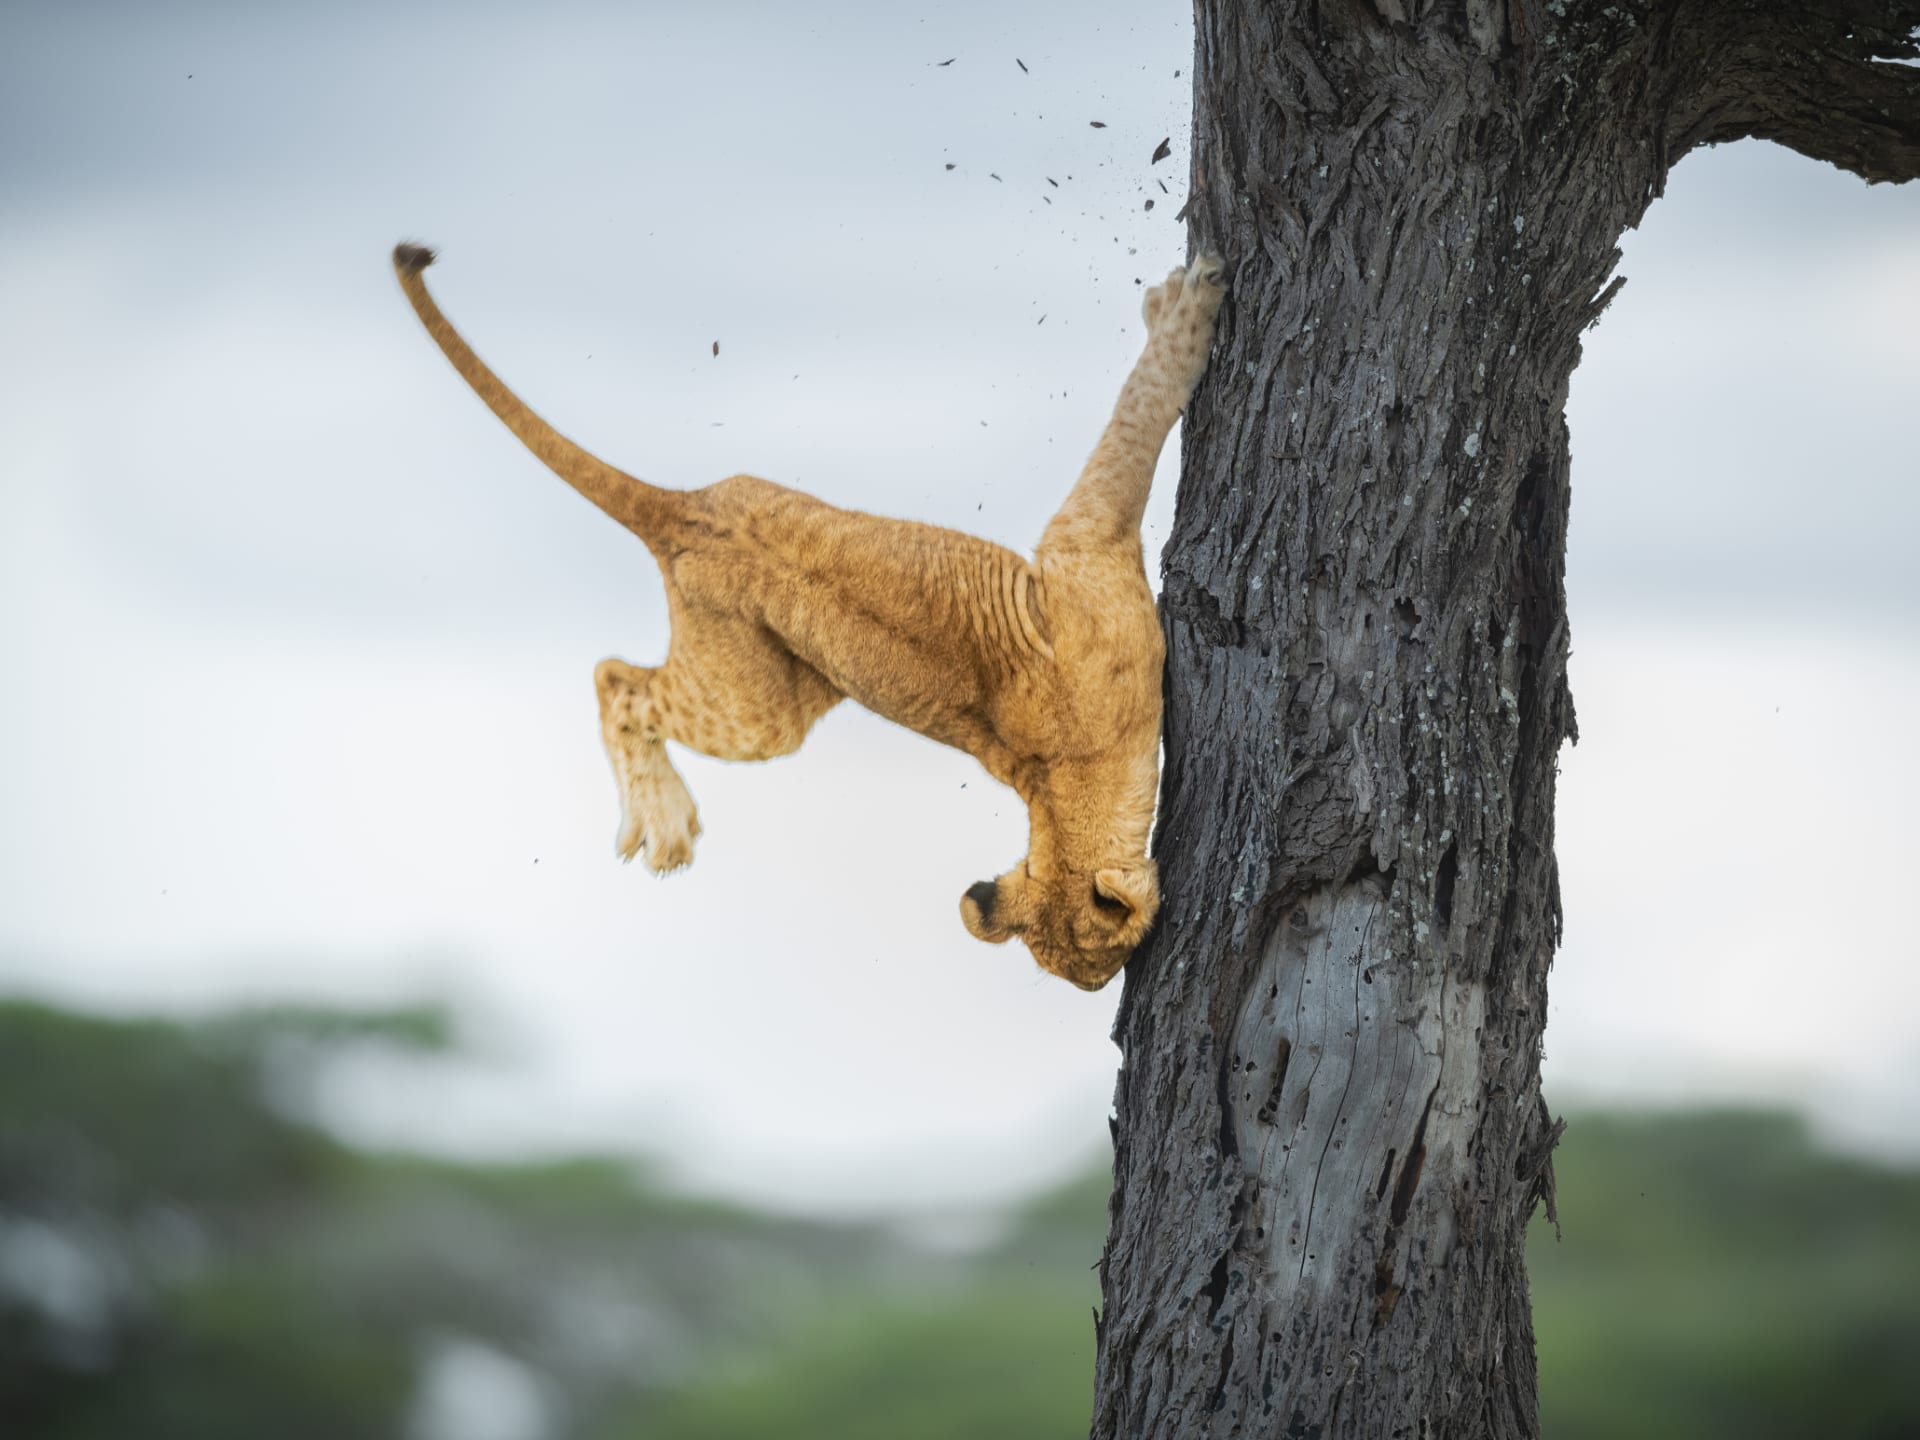 En Tanzania, un fotógrafo documenta a un cachorro de león "Su orgullo fue herido" al caer de un arbol